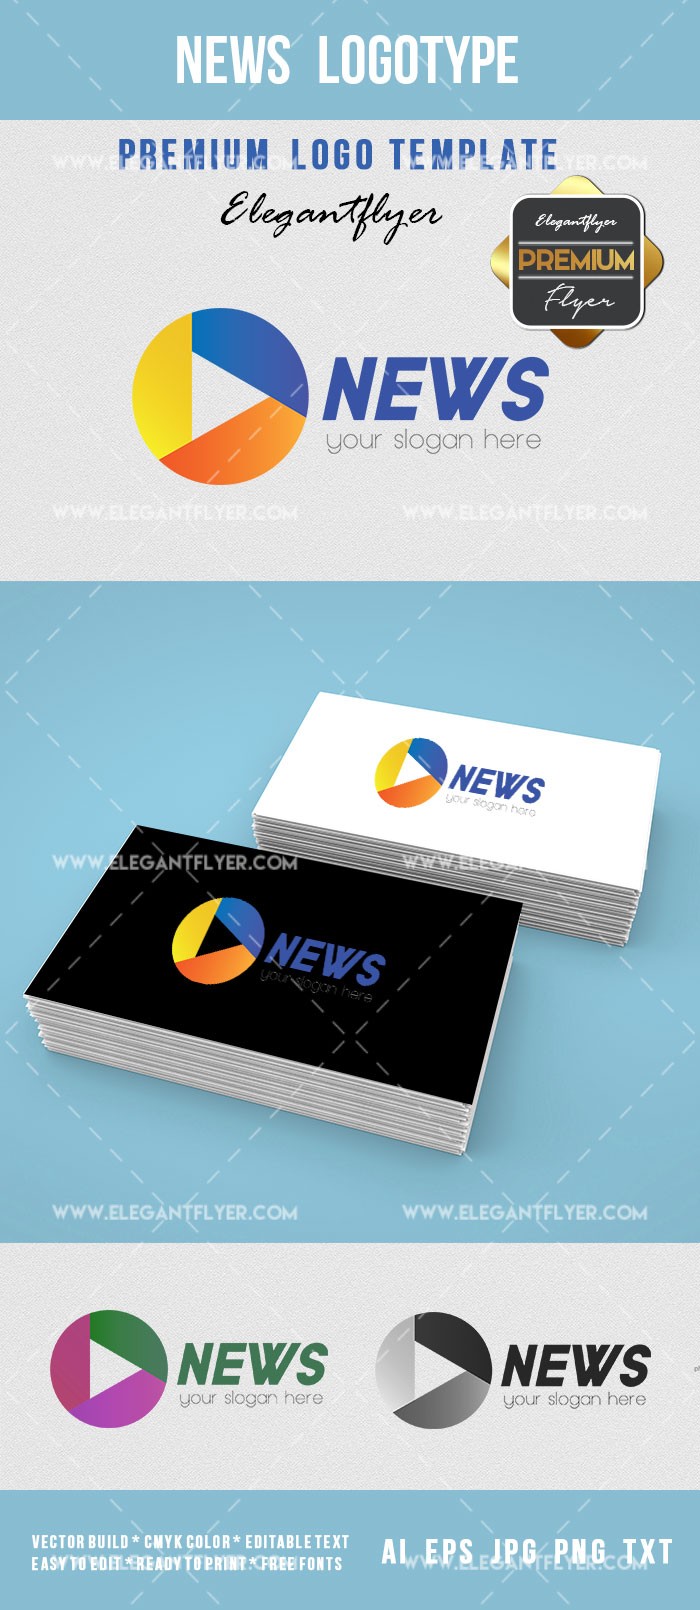 News Logotype by ElegantFlyer